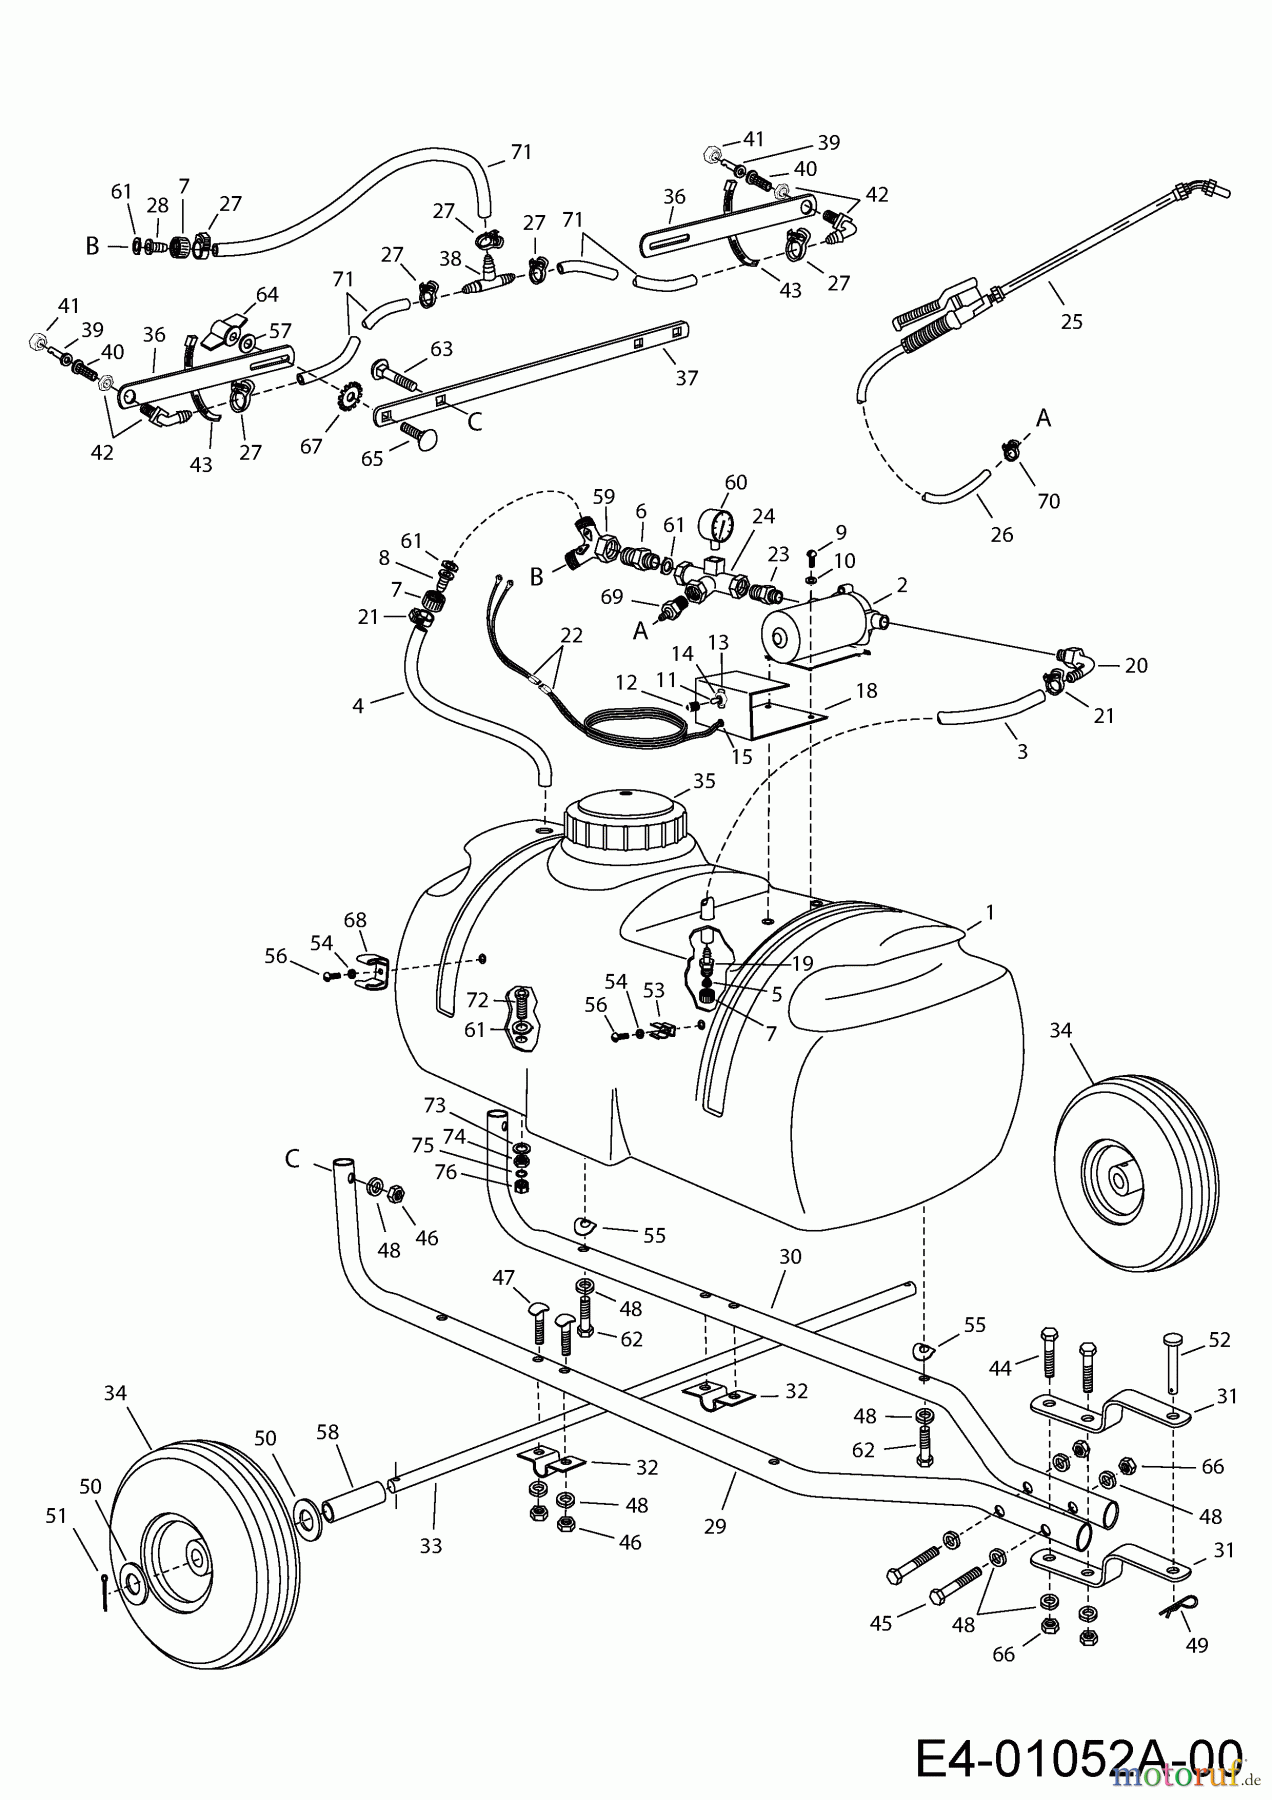  MTD Accessories Accessories garden and lawn tractors Sprayer 45-0293  (190-537-000) 190-537-000  (2000) Basic machine